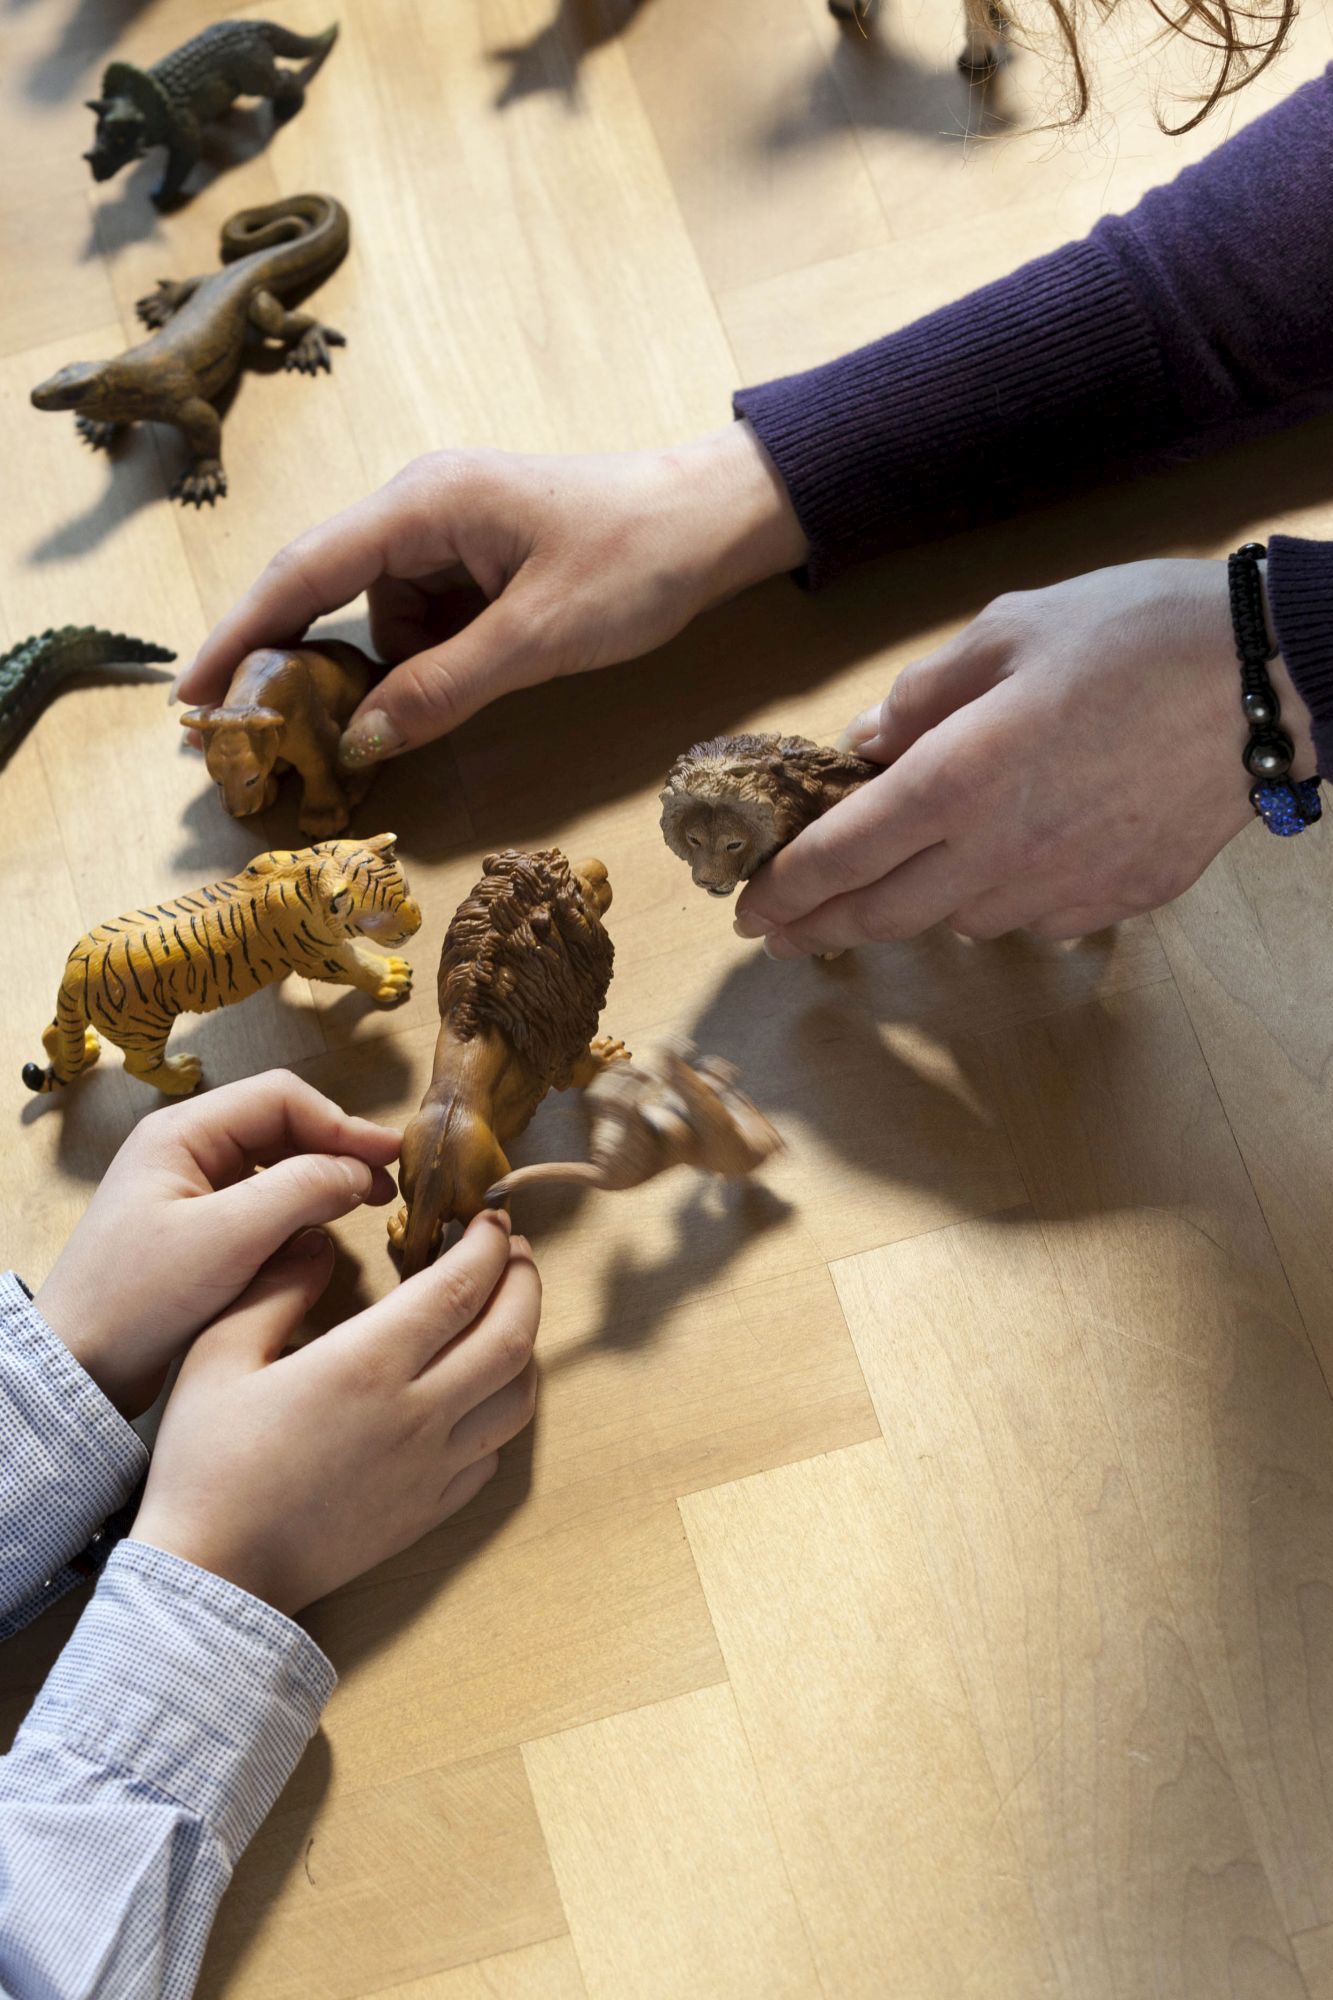 Erwachsene und kindliche Hände spielen mit Tier-Figuren